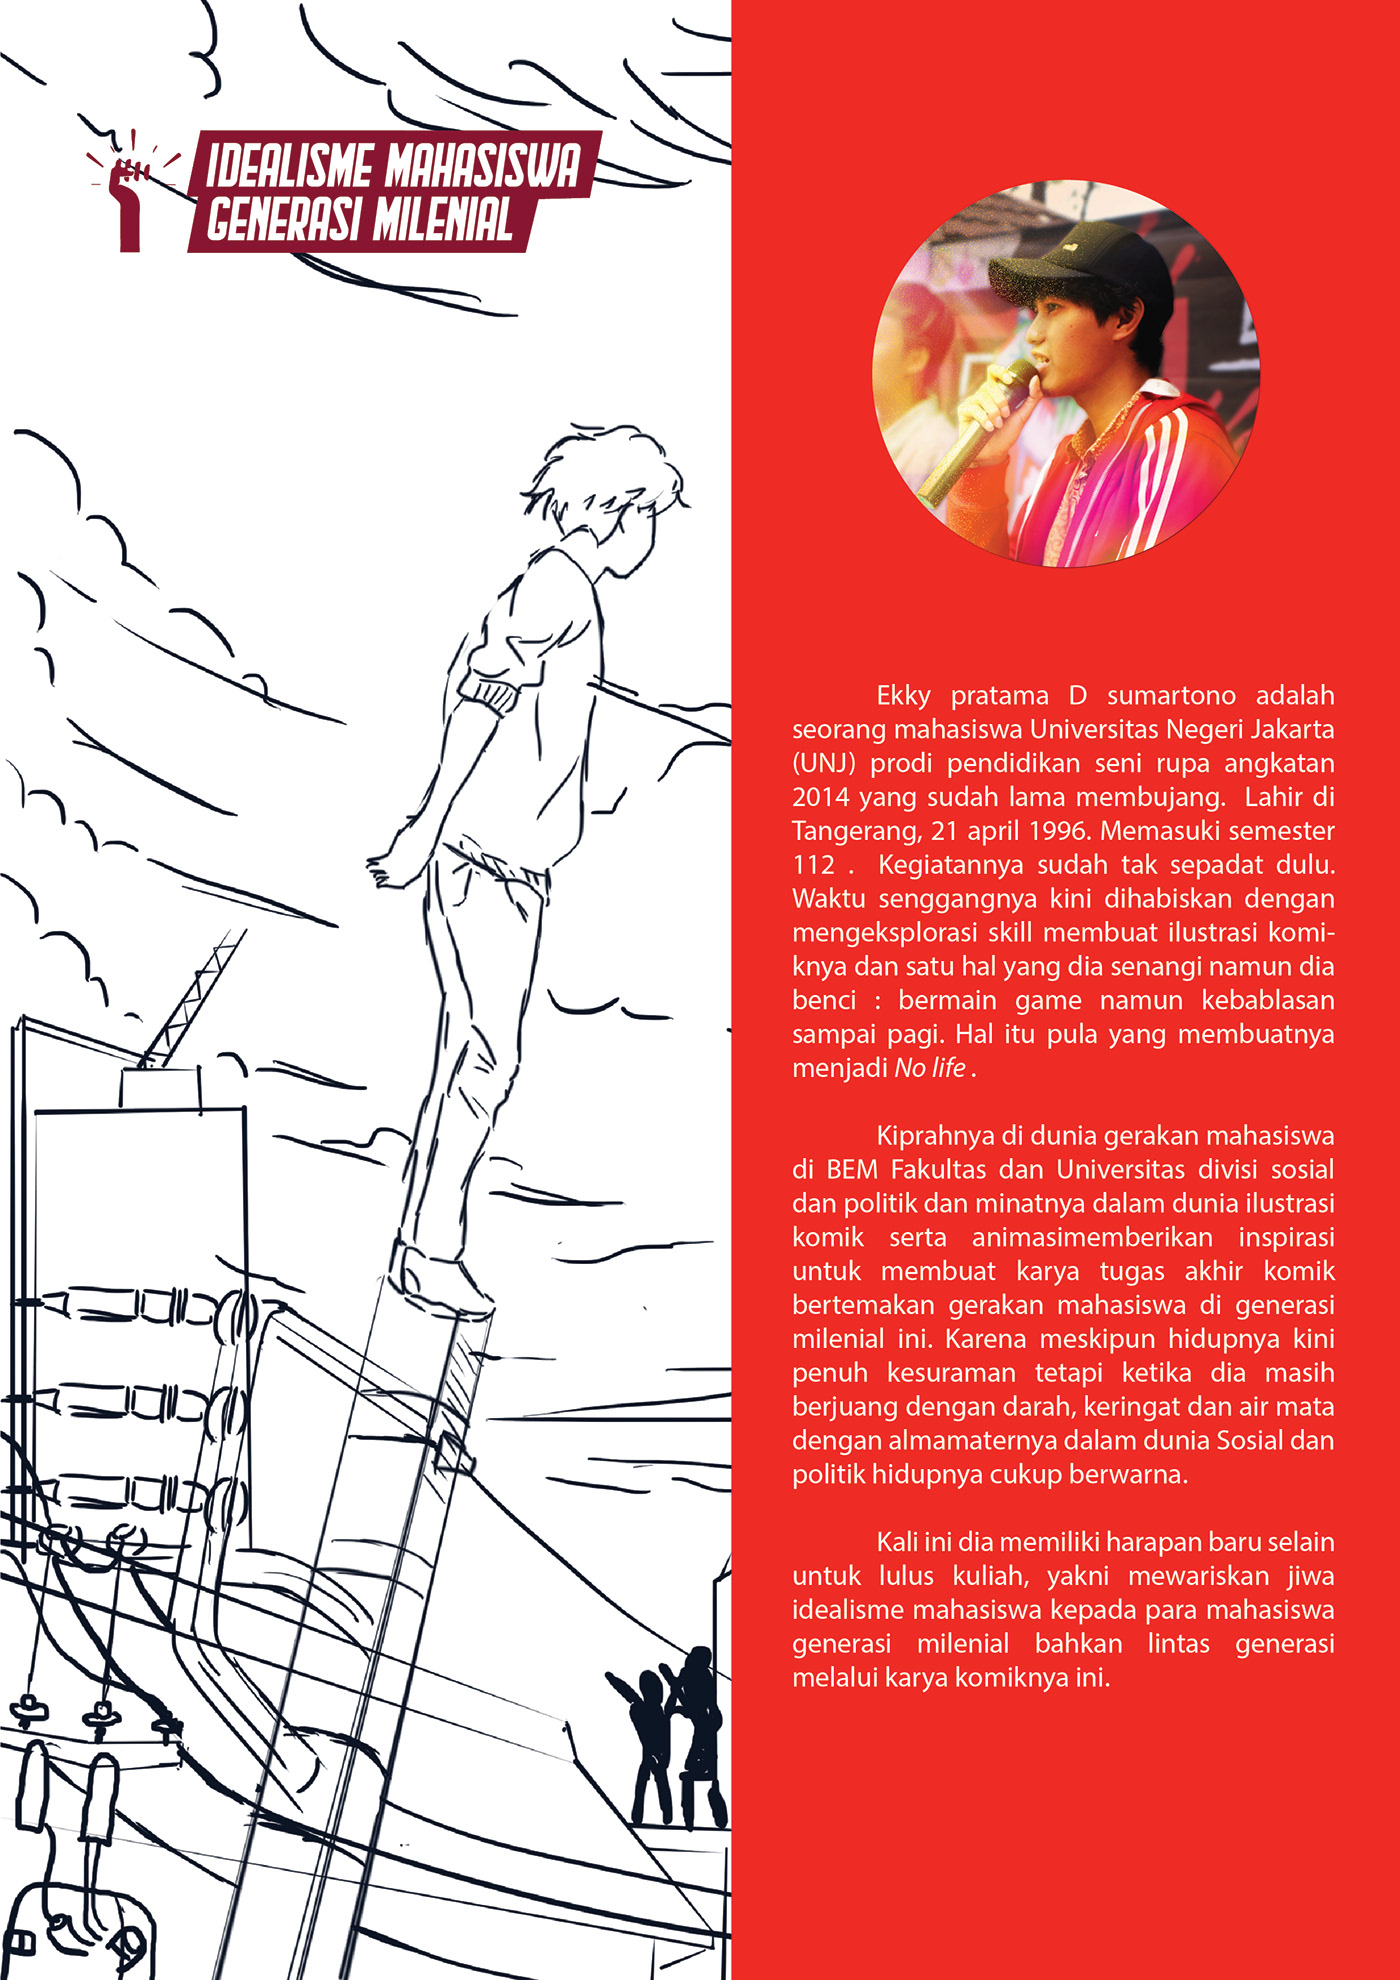 #ilustrasi #komik anime Character design  concept art GERAKANMAHASISWA indonesia mahasiswa manga Webtoon